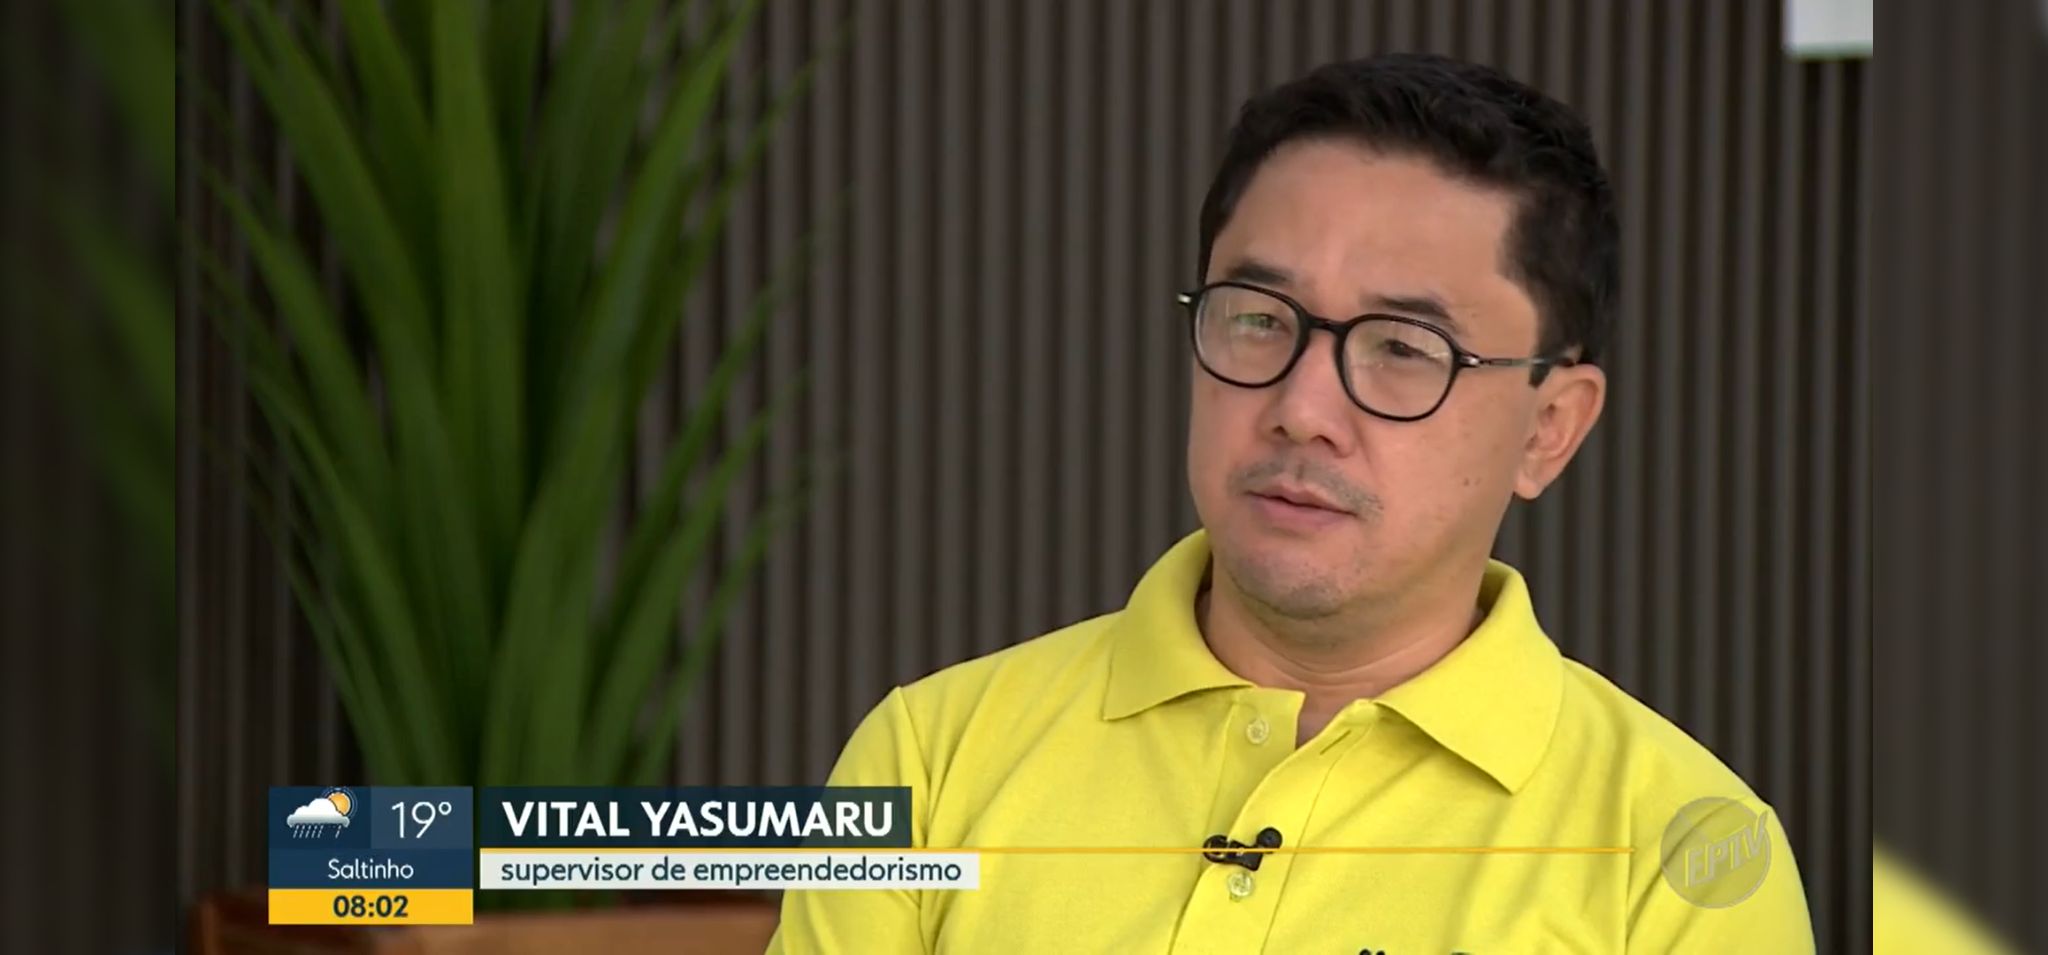 Captura de Tela. Vital Yasumaru, supervisor de empreendedorismo da Unicamp dá entrevista para a EPTV. Ele é um homem japonês de cabelos pretos, usa óculos de armação redonda e camisa polo verde abacate. Fim da descrição.